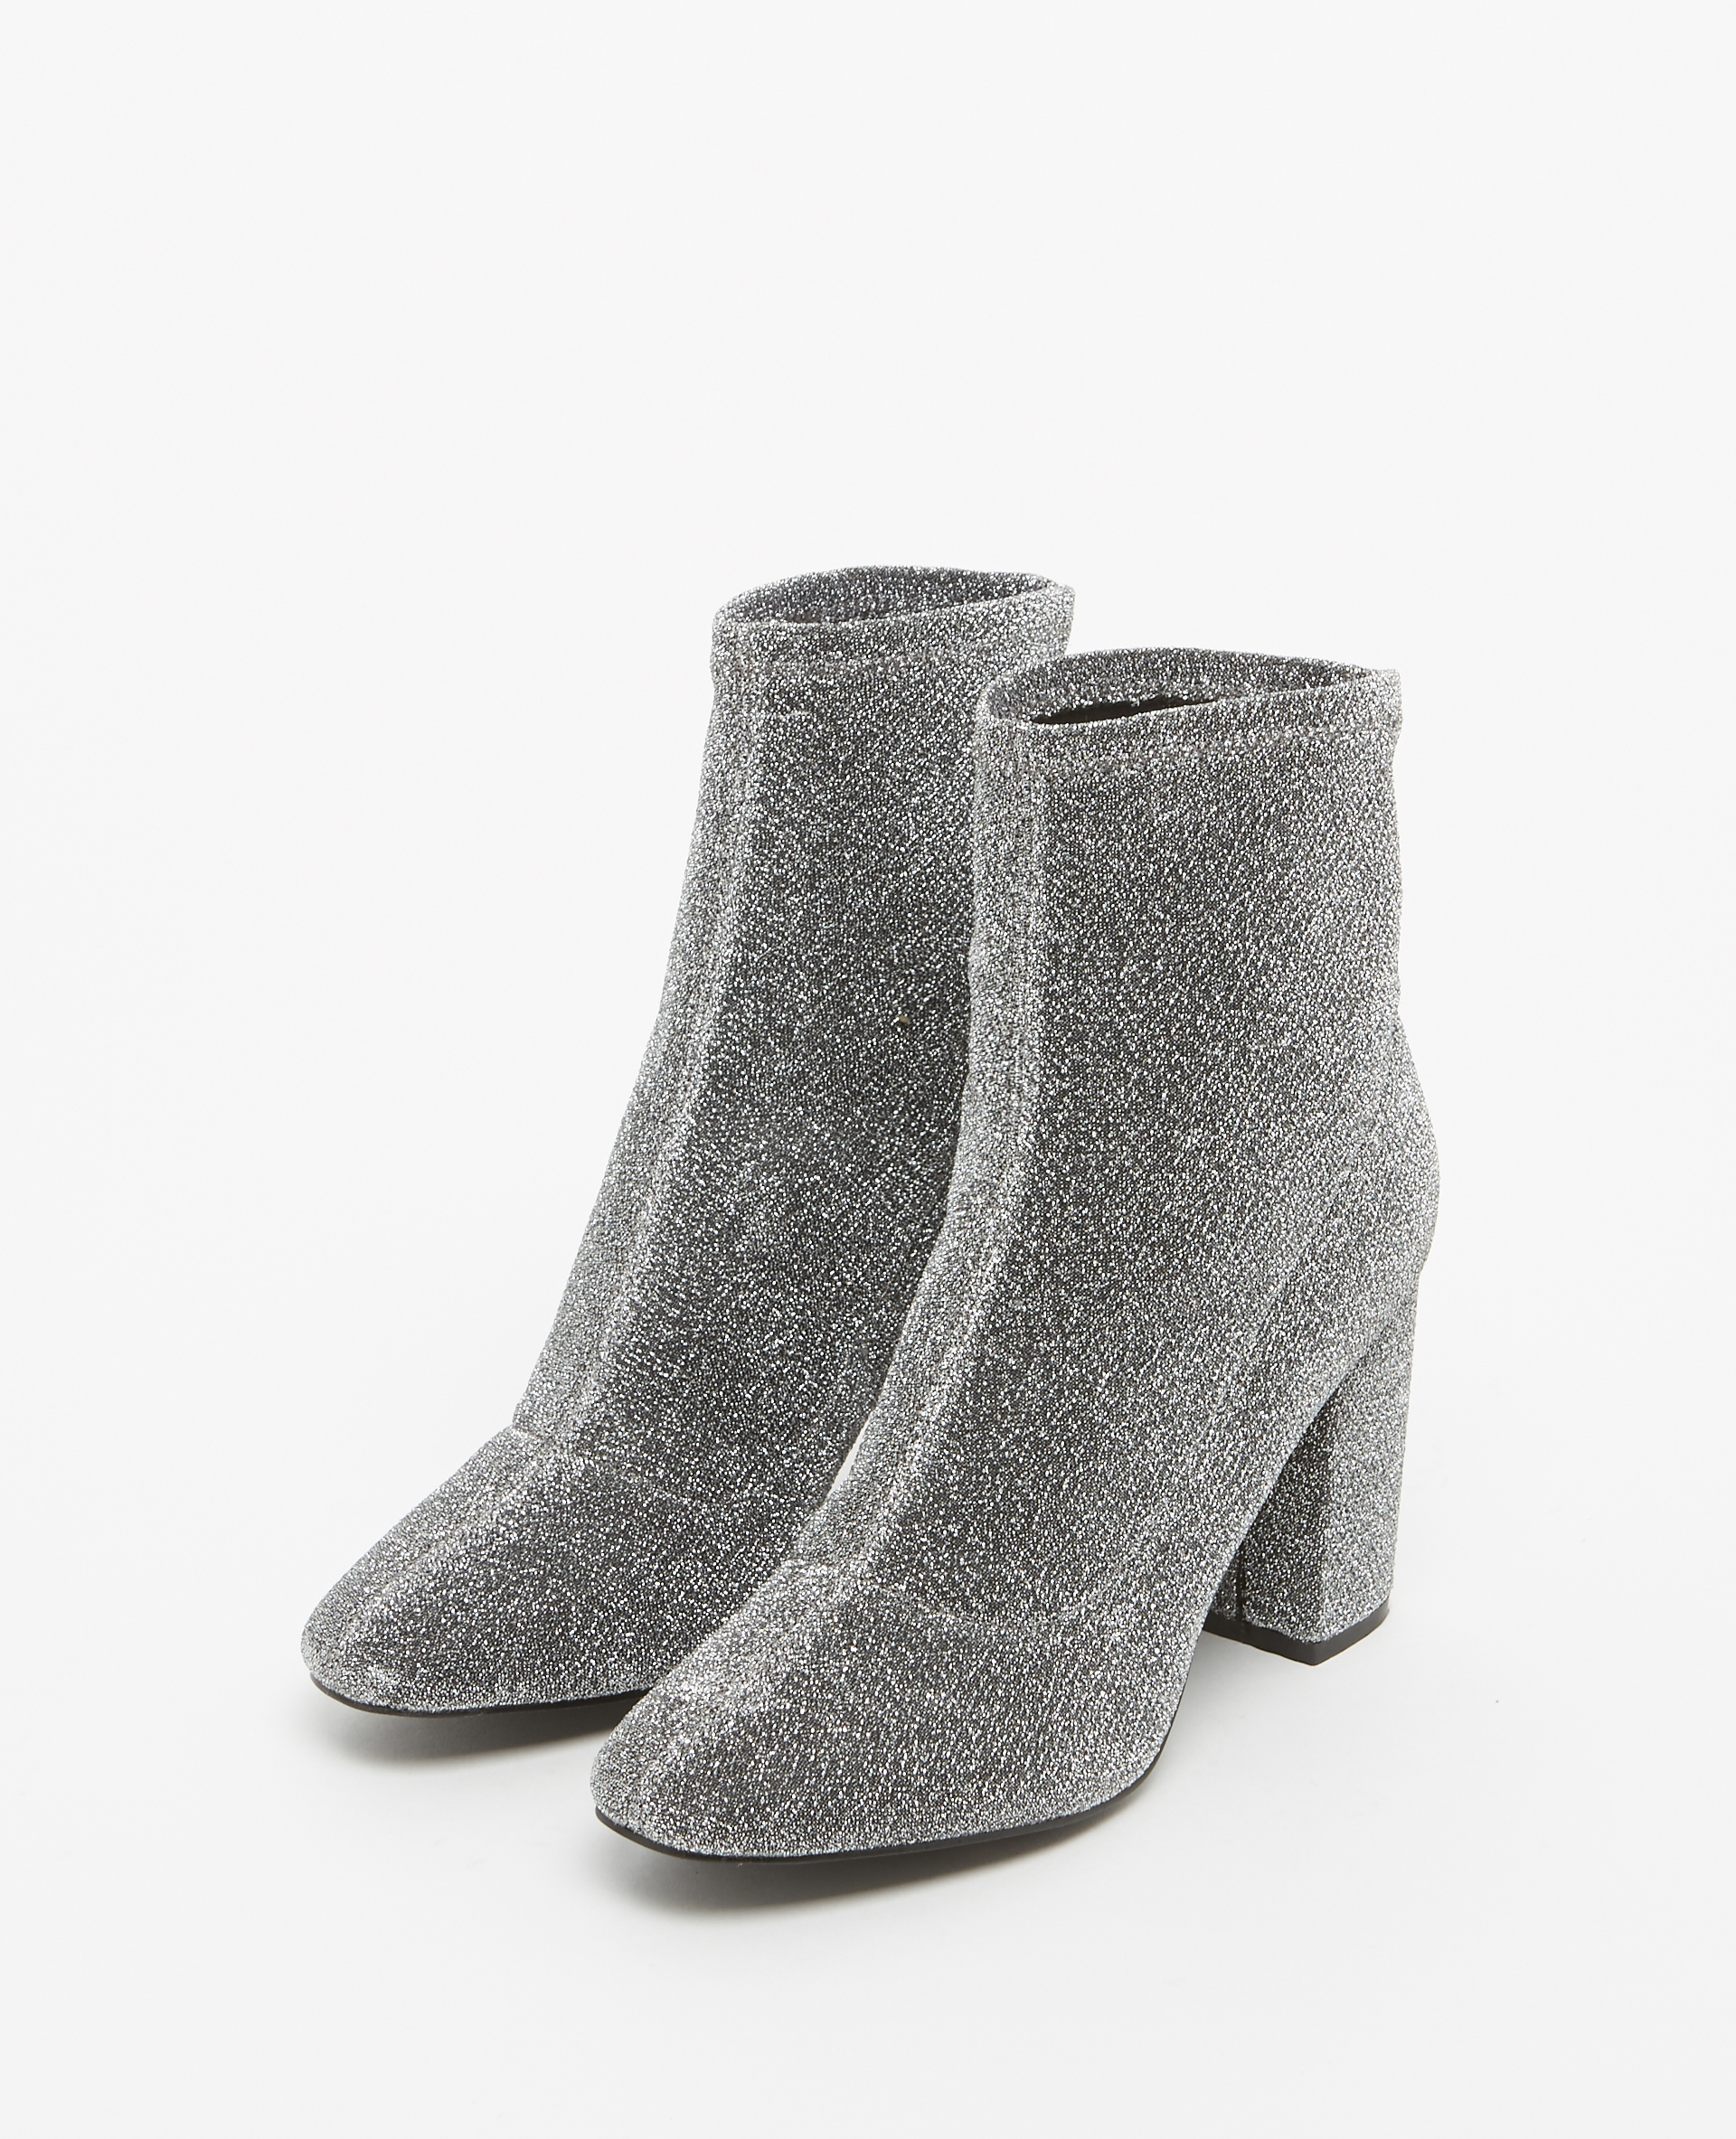 Boots à talons gris argenté - Pimkie